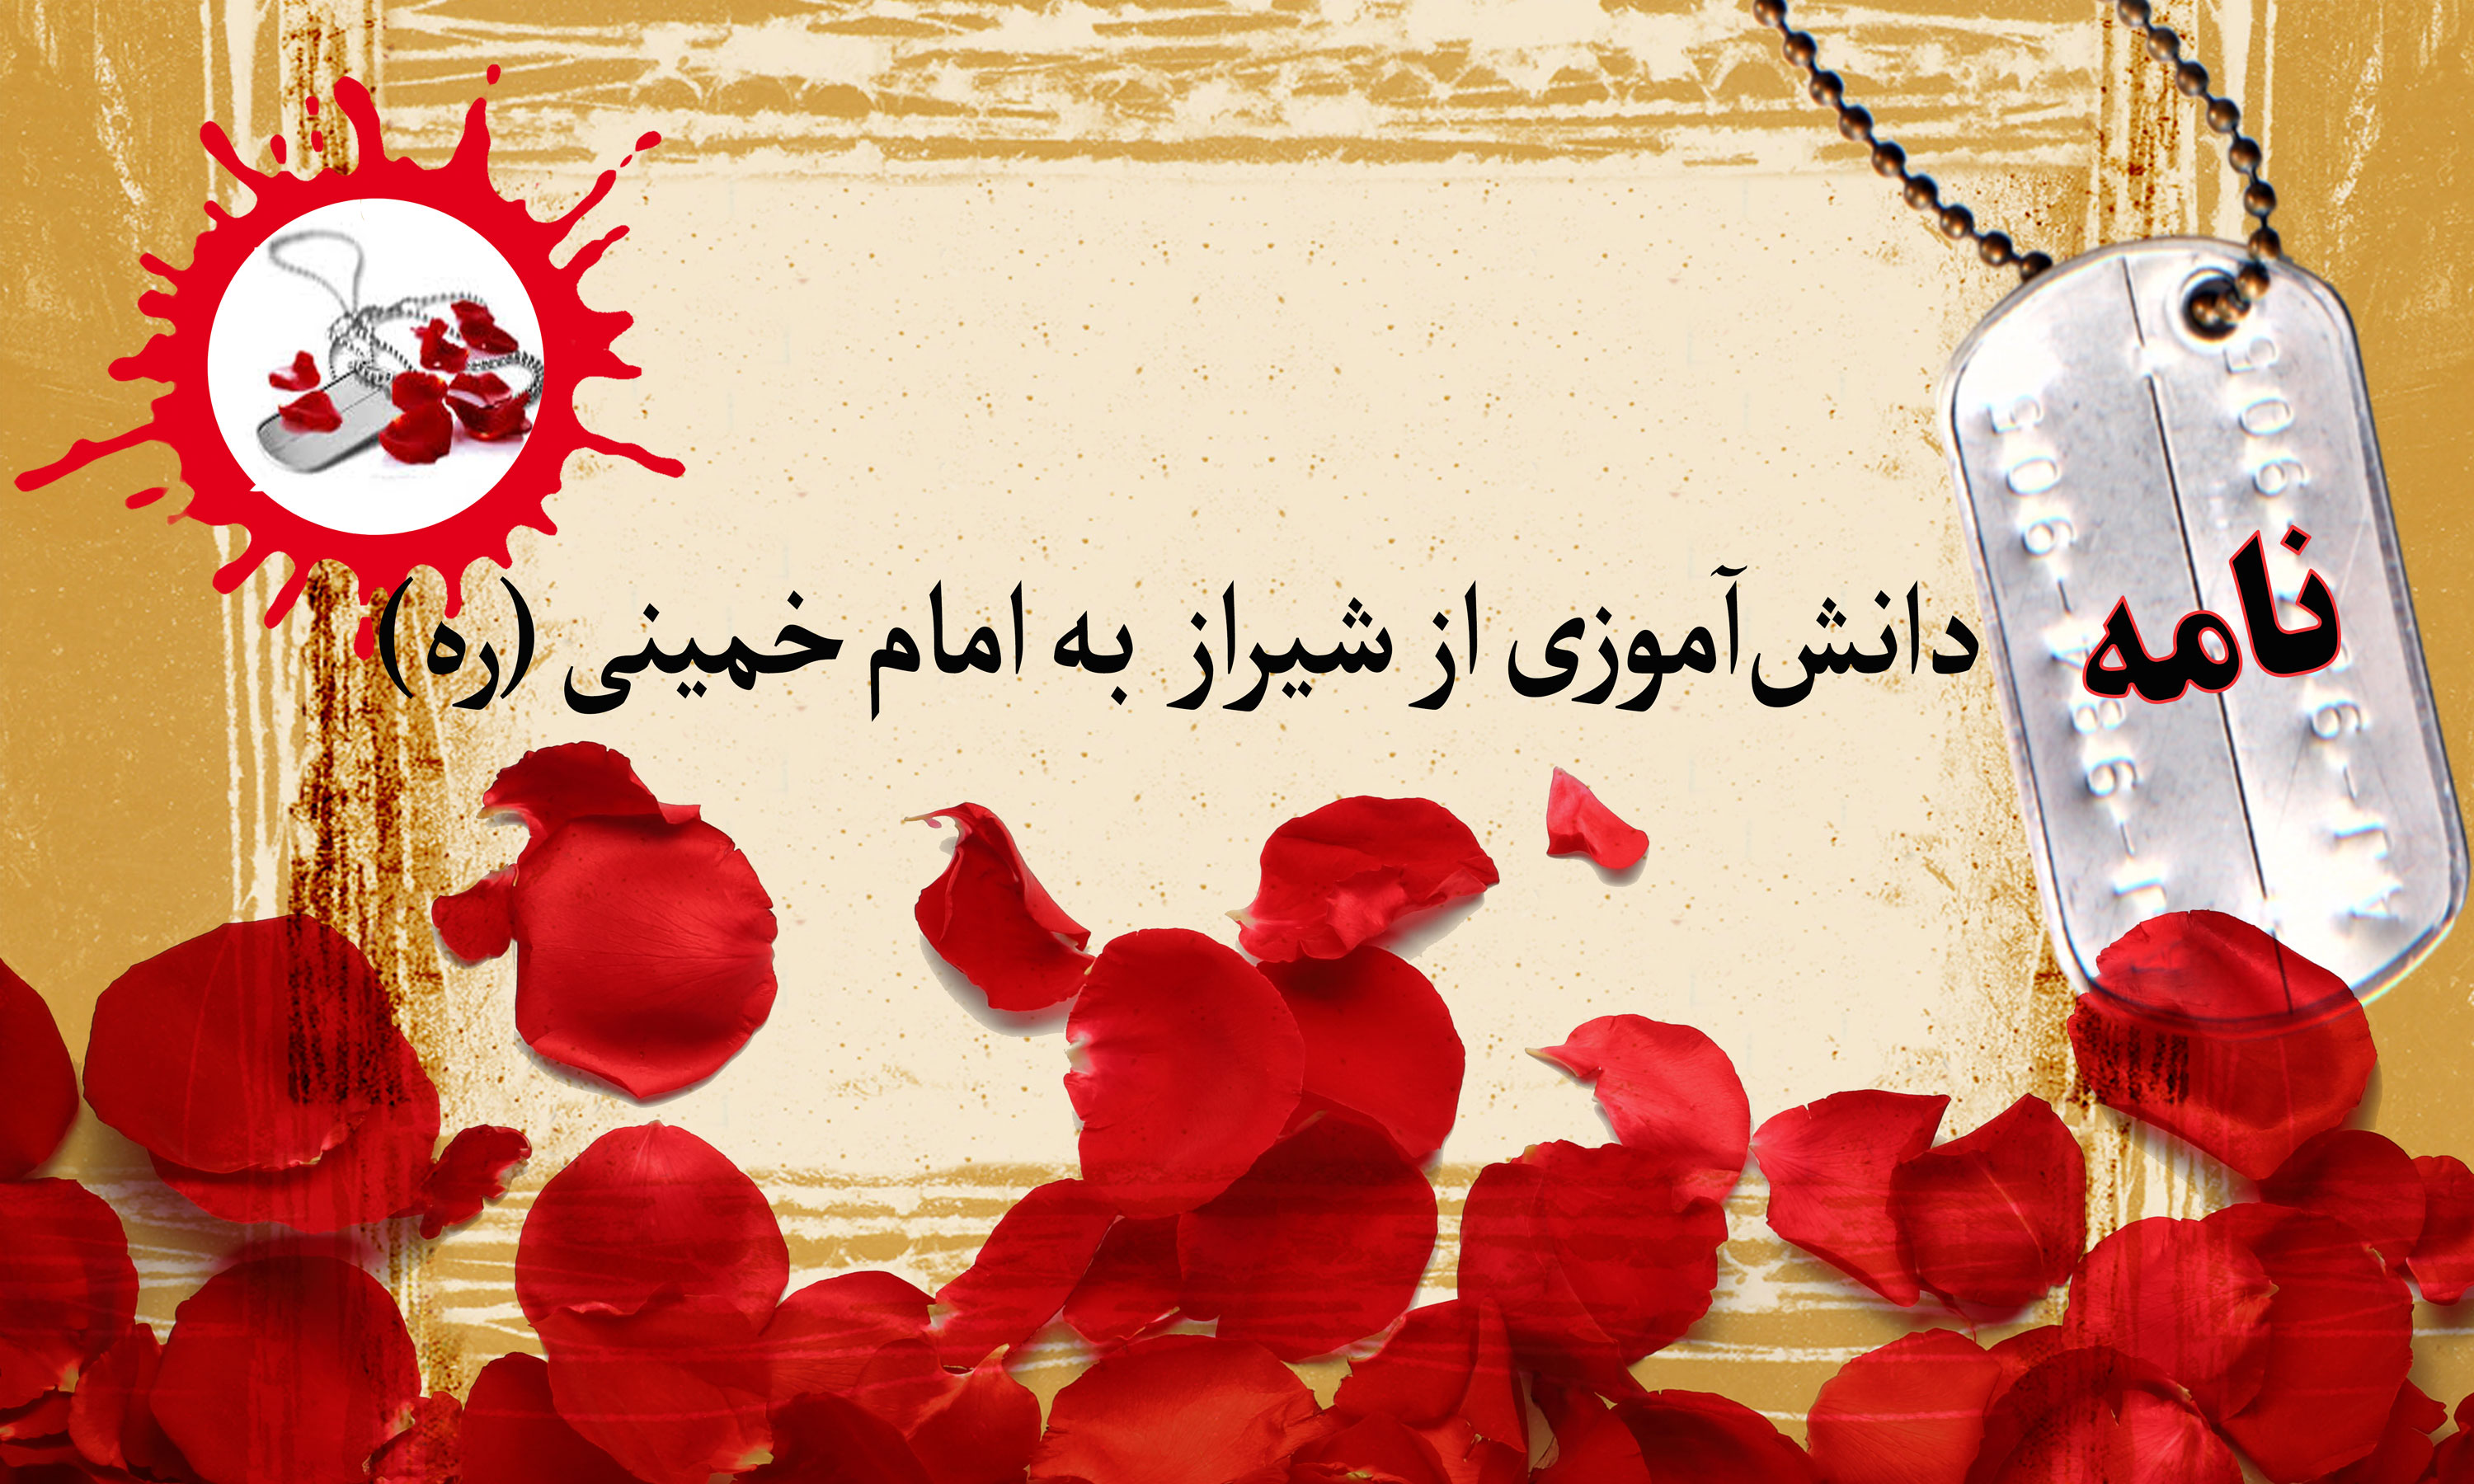 نامه دانش آموز شیرازی به امام خمینی (ره)/ منافقین را رسوا خواهم کرد